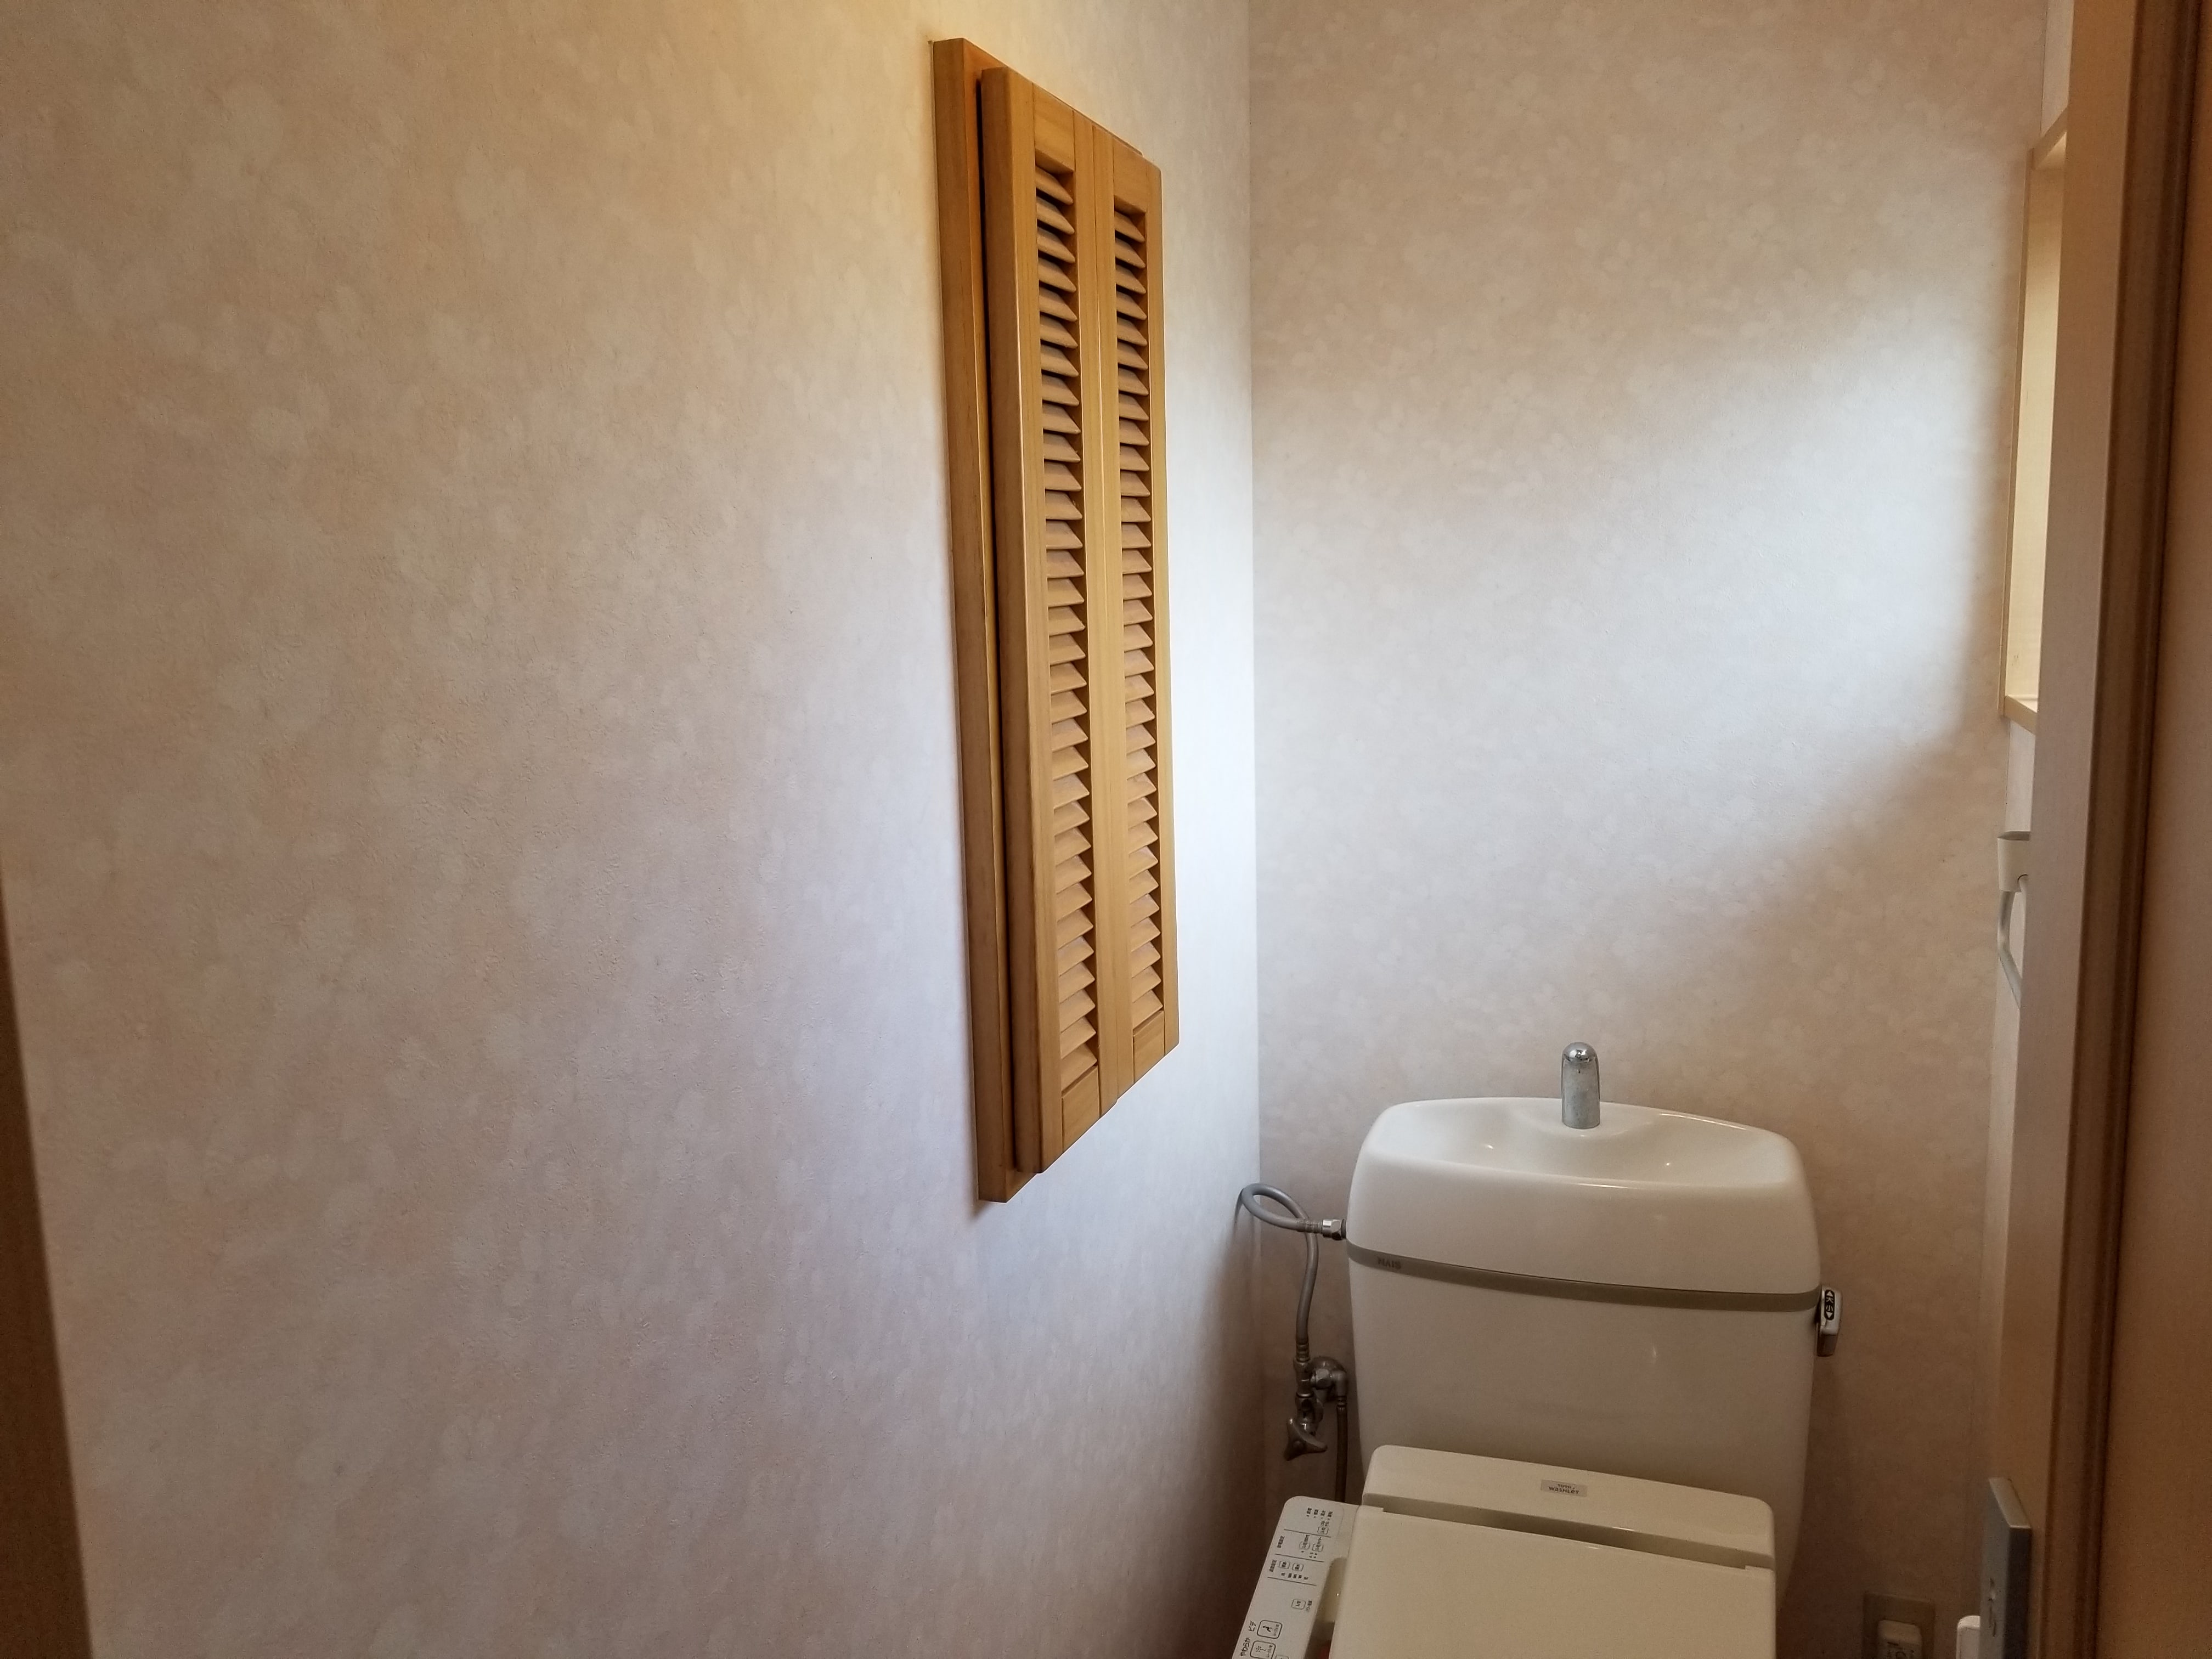 長崎市でトイレの壁紙 クロス 張替えの施工事例 長崎壁紙 クロス 張替え職人 壁紙クロス張替はお任せ下さい